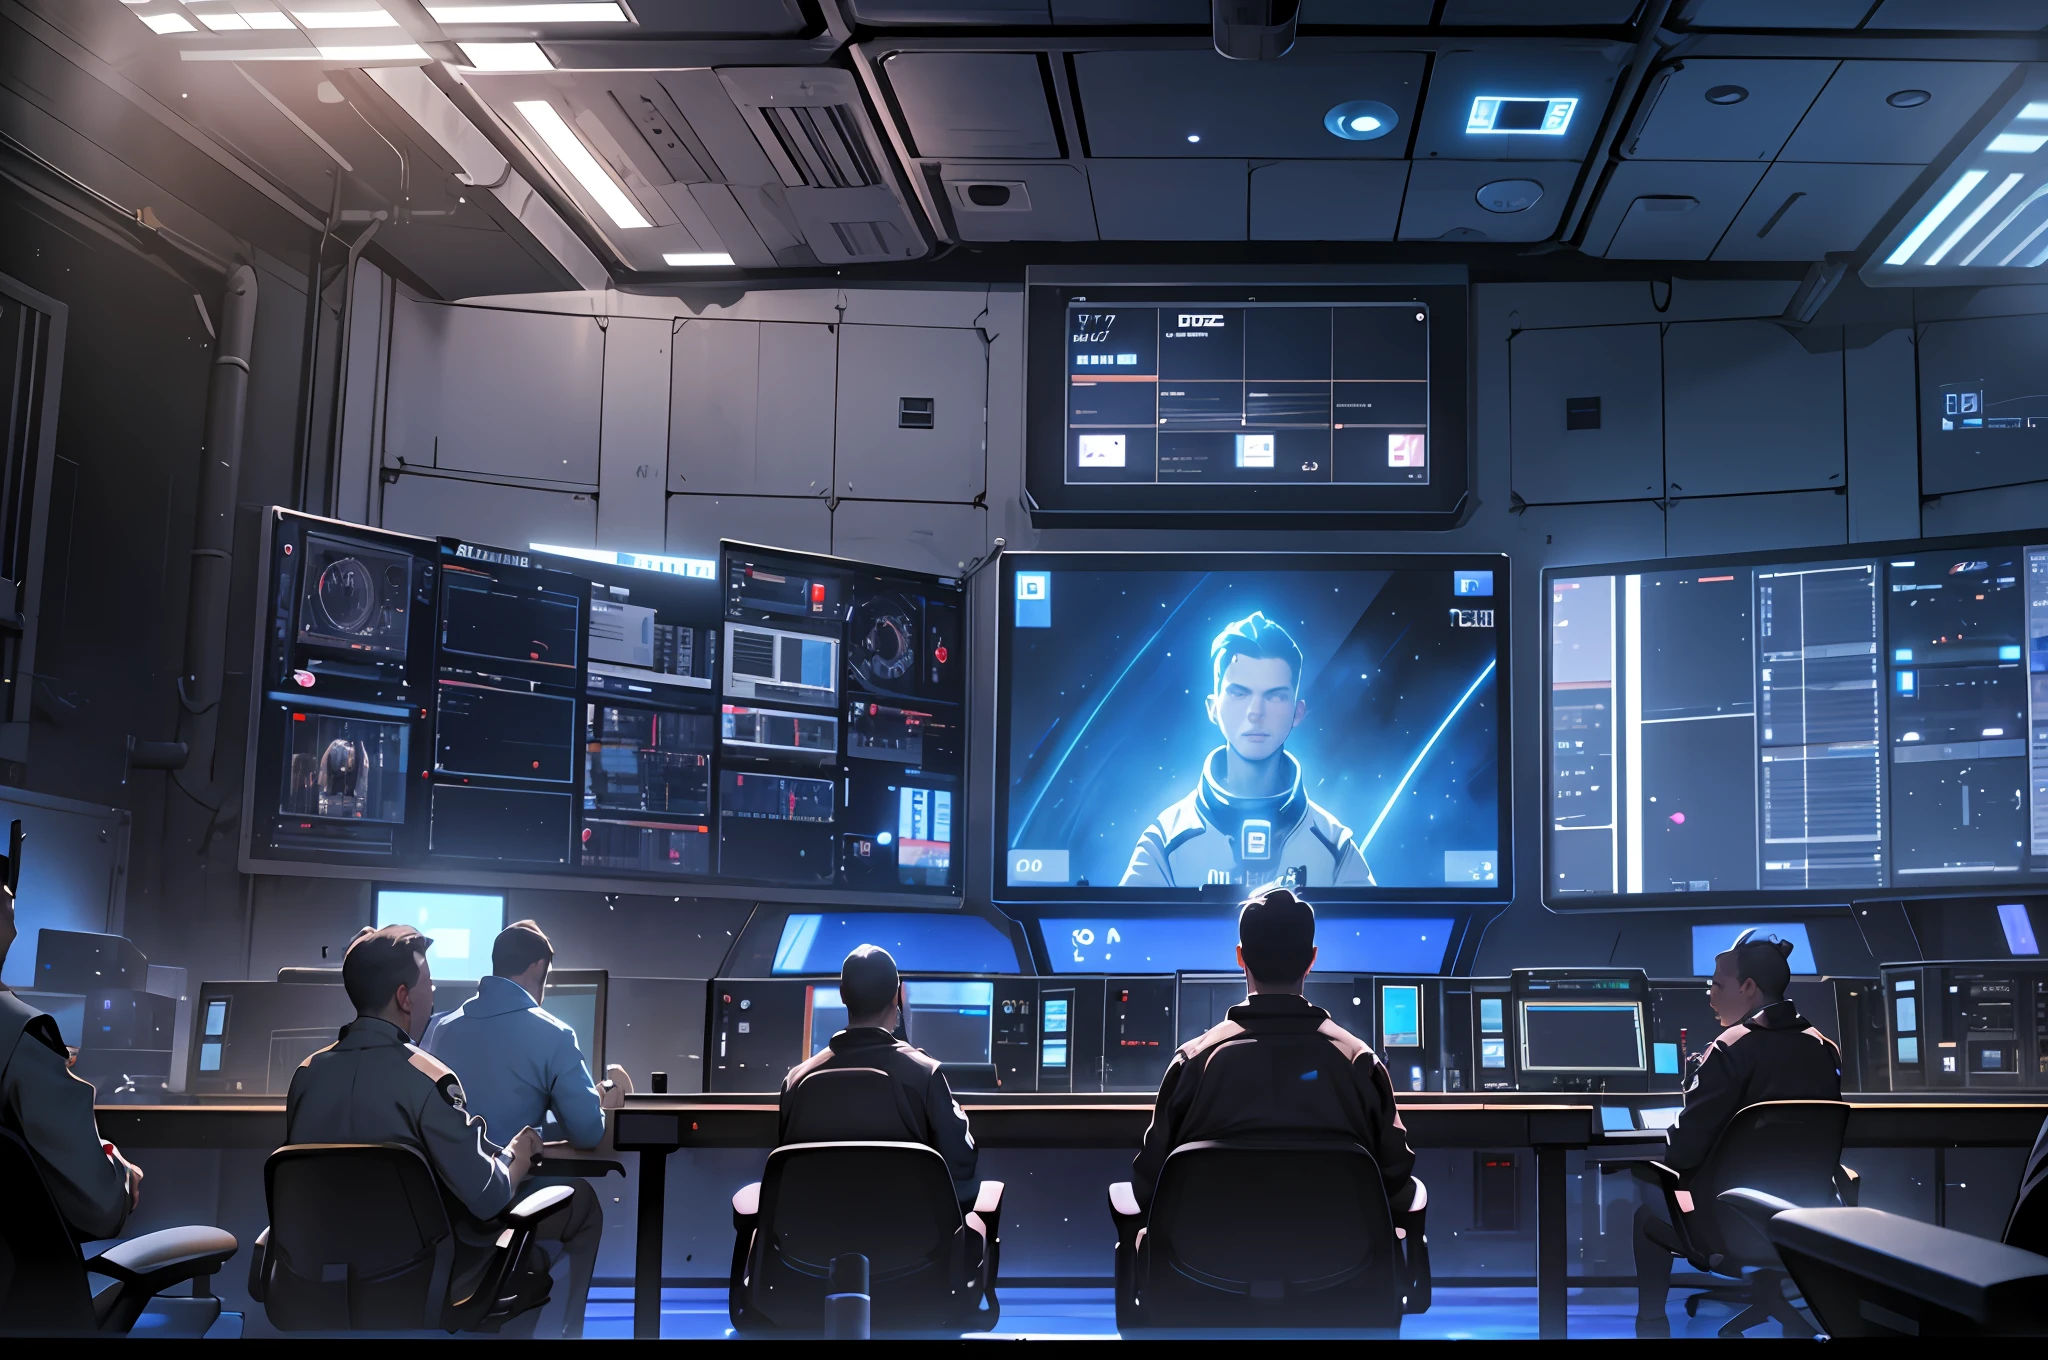 宇宙制御室, コントロールホール, たくさんのスクリーン, 青い光のスクリーン, たくさんのクルー, みんなが拍手する, リアリズム, 高いディテール, 映画照明, クールな照明, 閉じる, リアリズム, 超高解像度, 高いディテール, 超詳細 --auto --s2